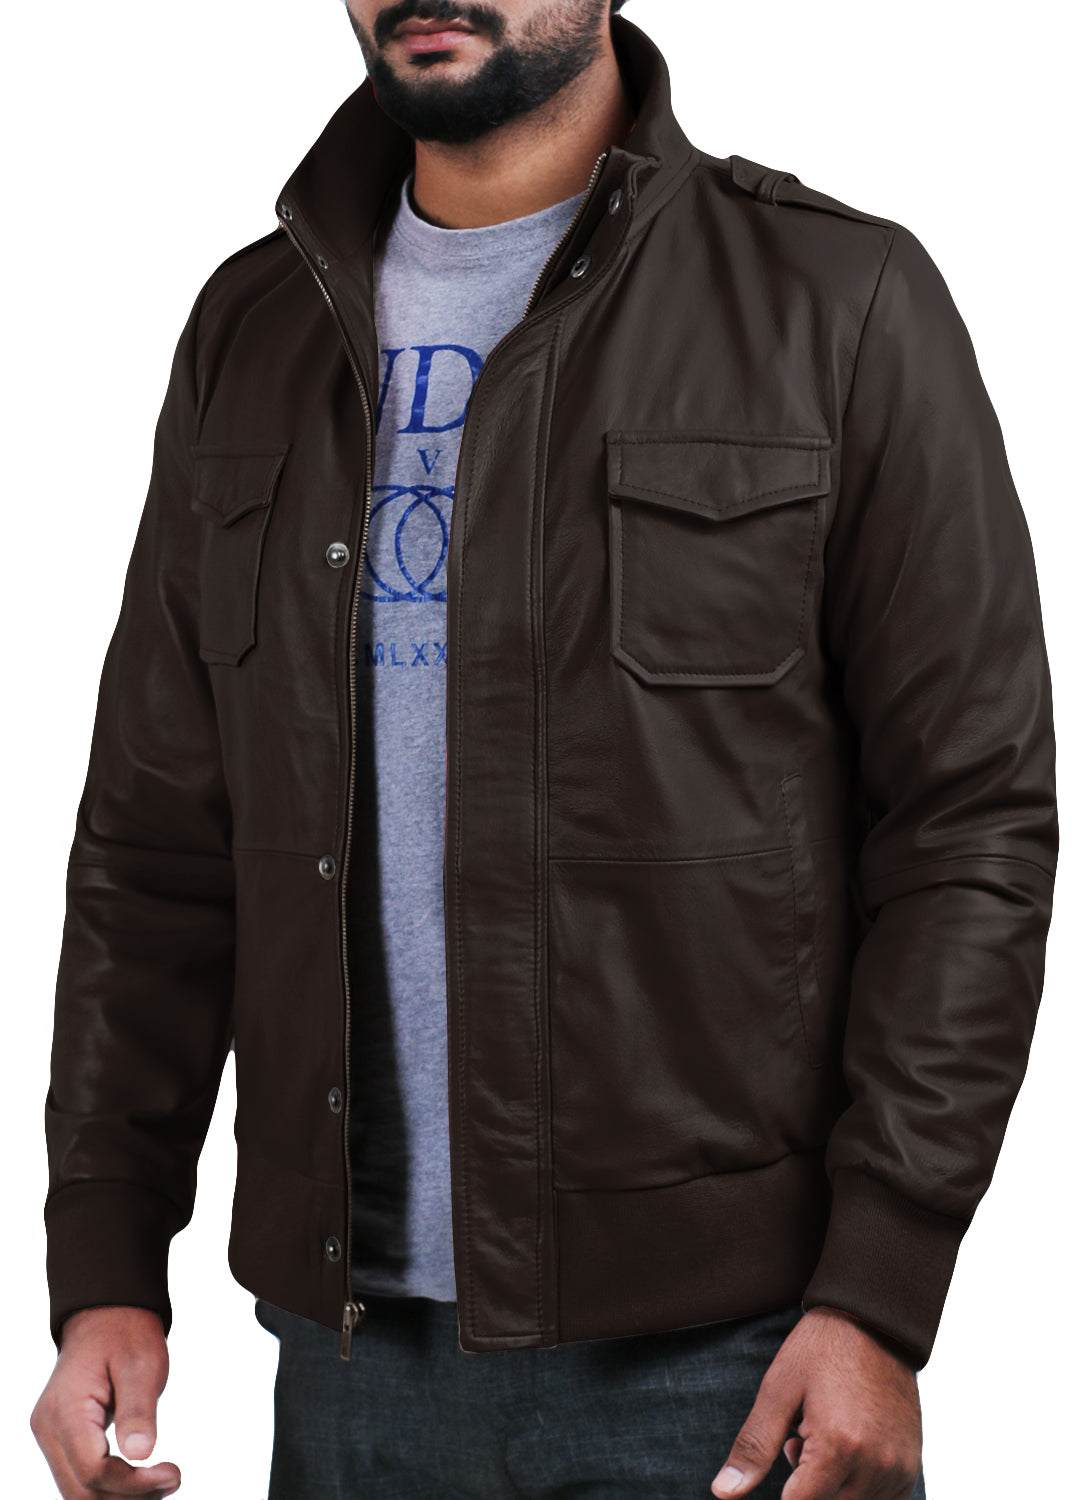 Leather Jackets Hub Mens Genuine Lambskin Leather Jacket (Black, Bomber Jacket) - 1501019